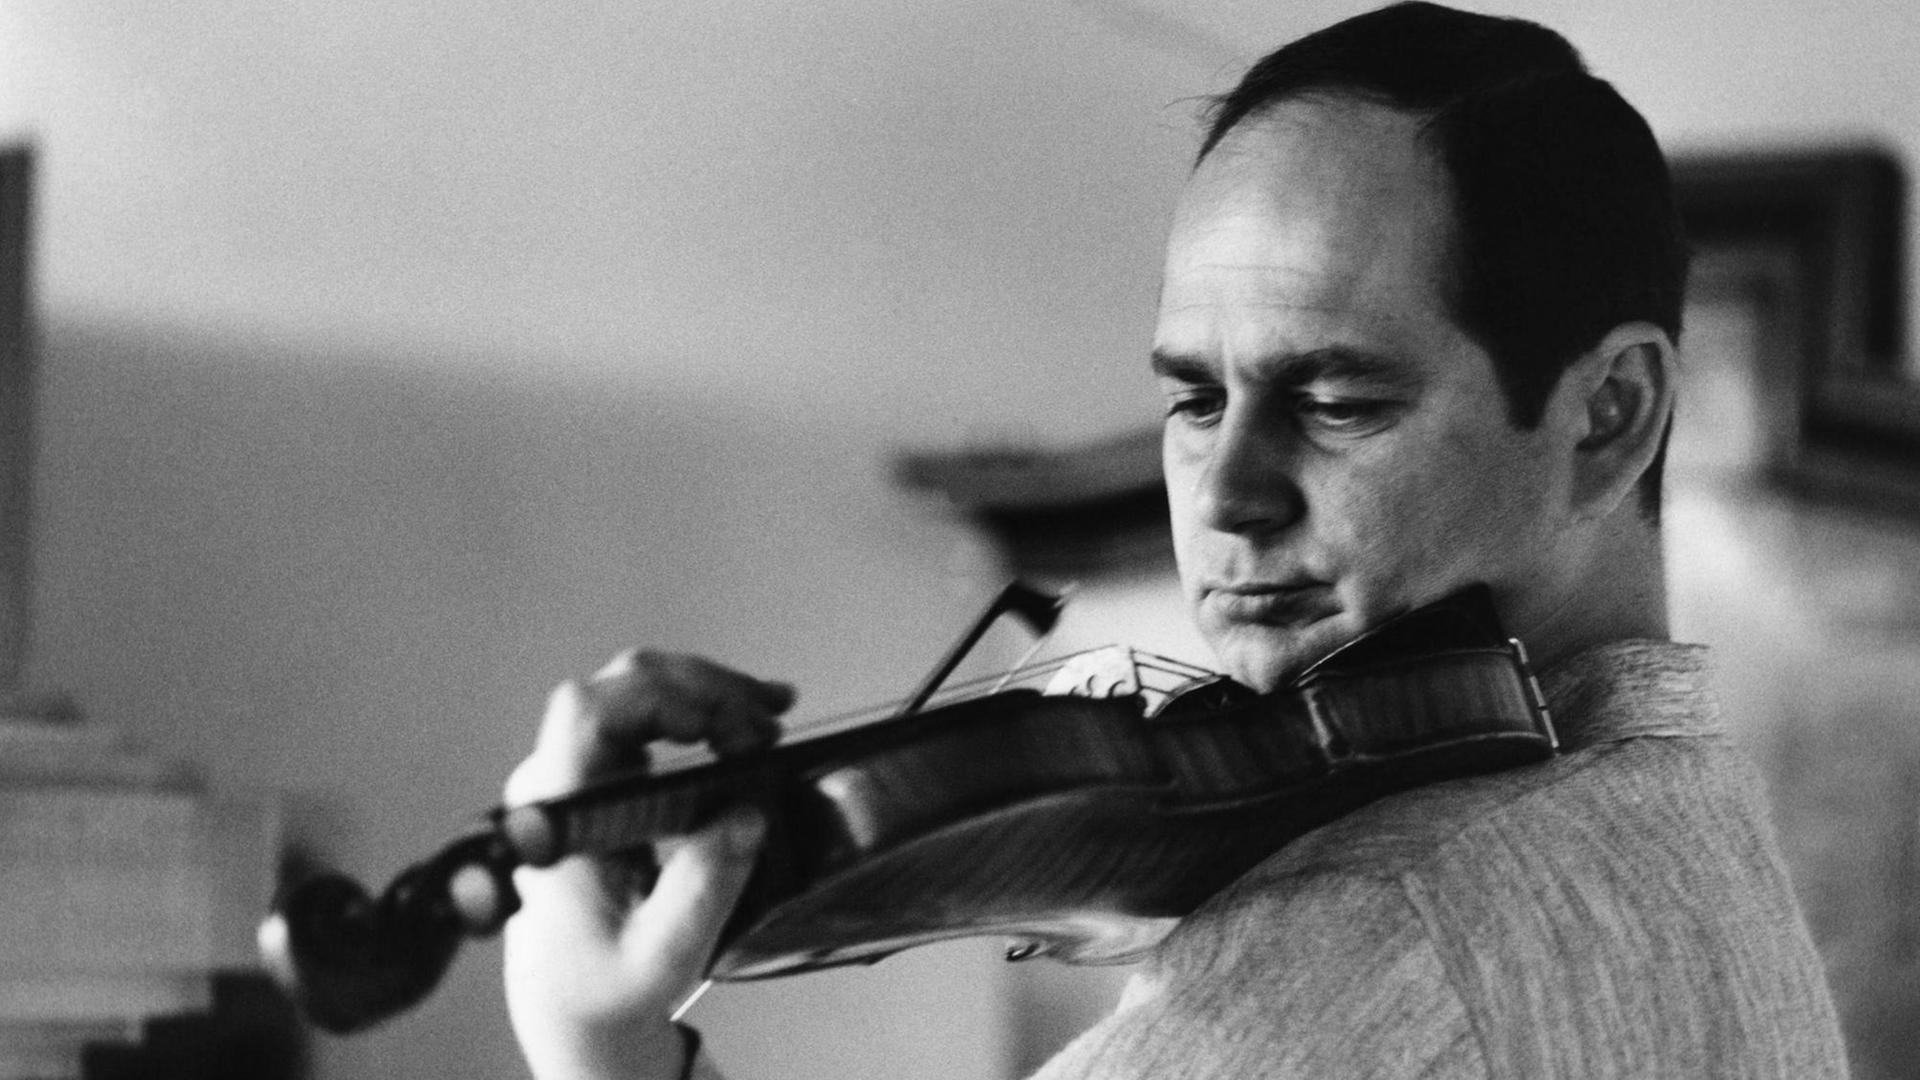 schwarz-weiss-Foto mit Saschko Gawriloff, er spielt Geige und trägt einen hellen, melierten Pullover, er schaut auf das Griffbrett